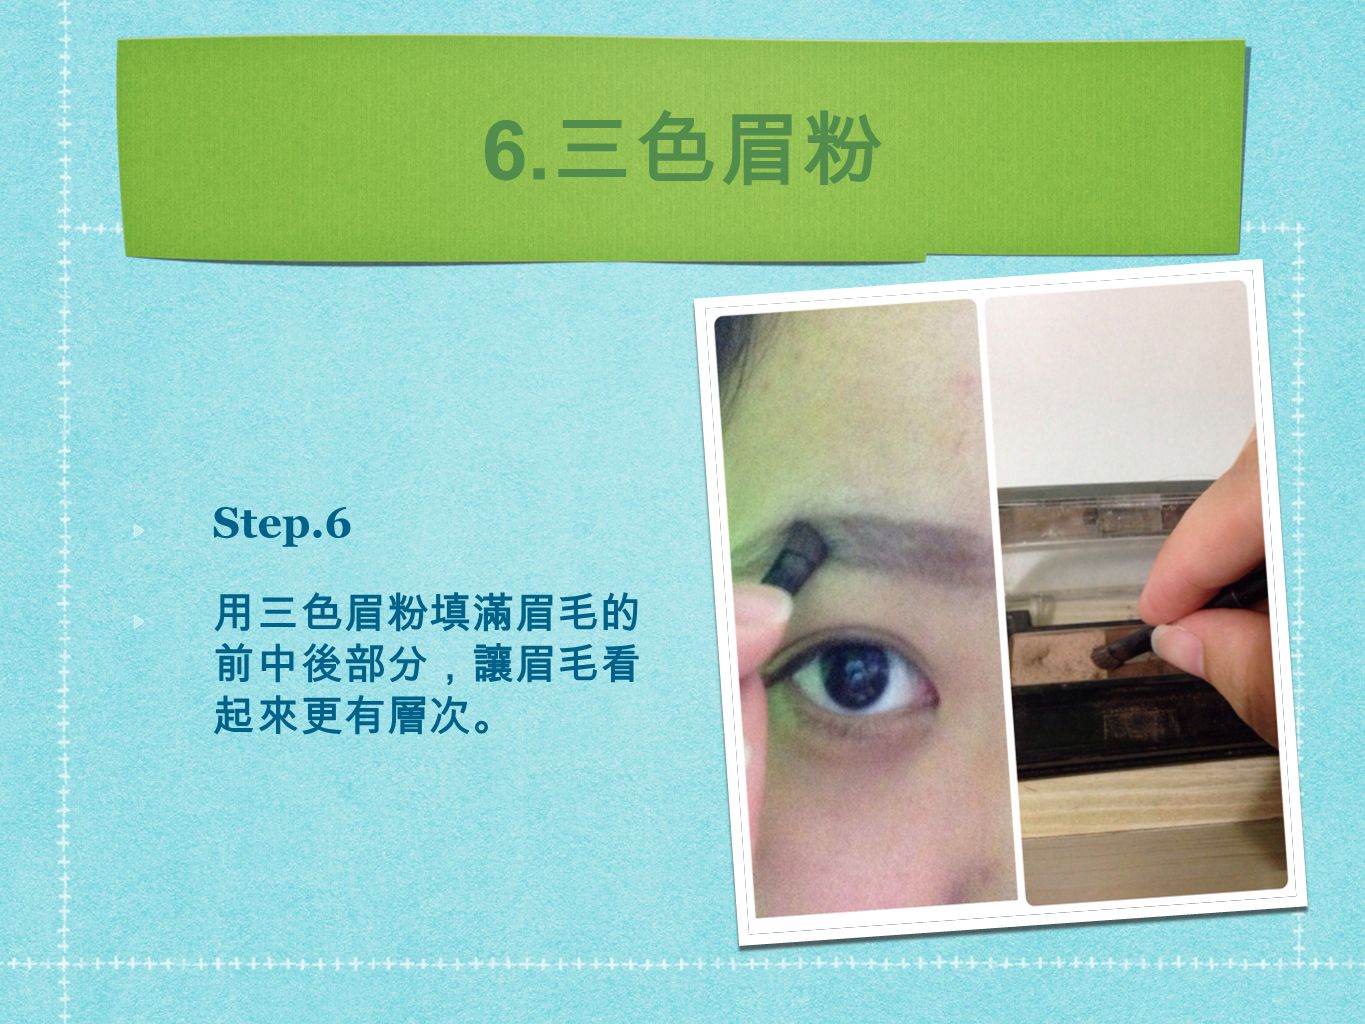 6. 三色眉粉 Step.6 用三色眉粉填滿眉毛的 前中後部分，讓眉毛看 起來更有層次。